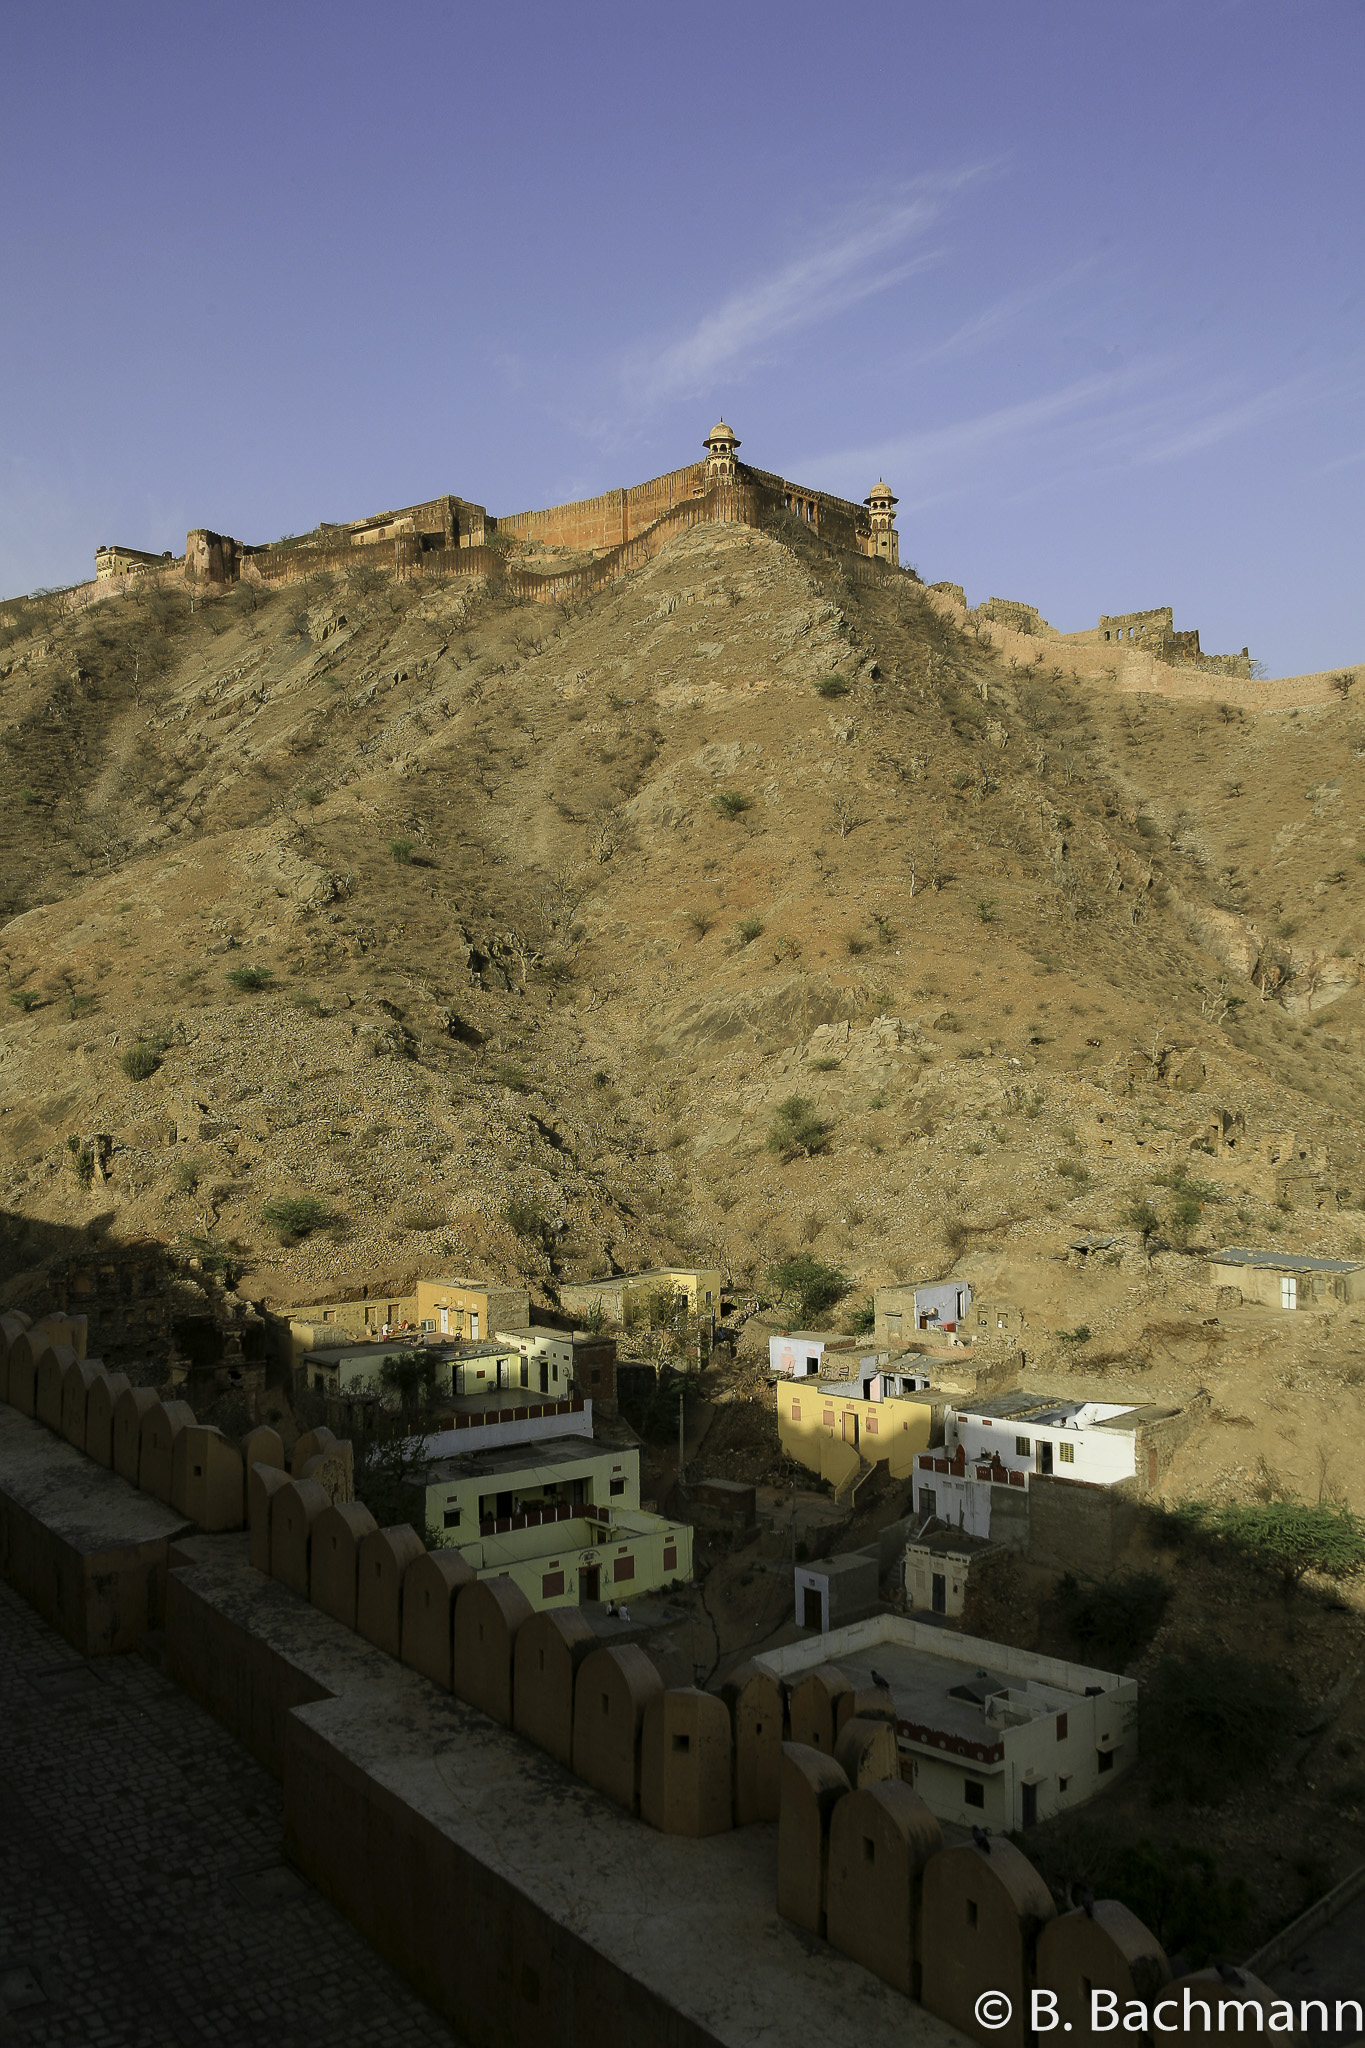 20100411_Jaipur_Fort-Amber_2314.jpg